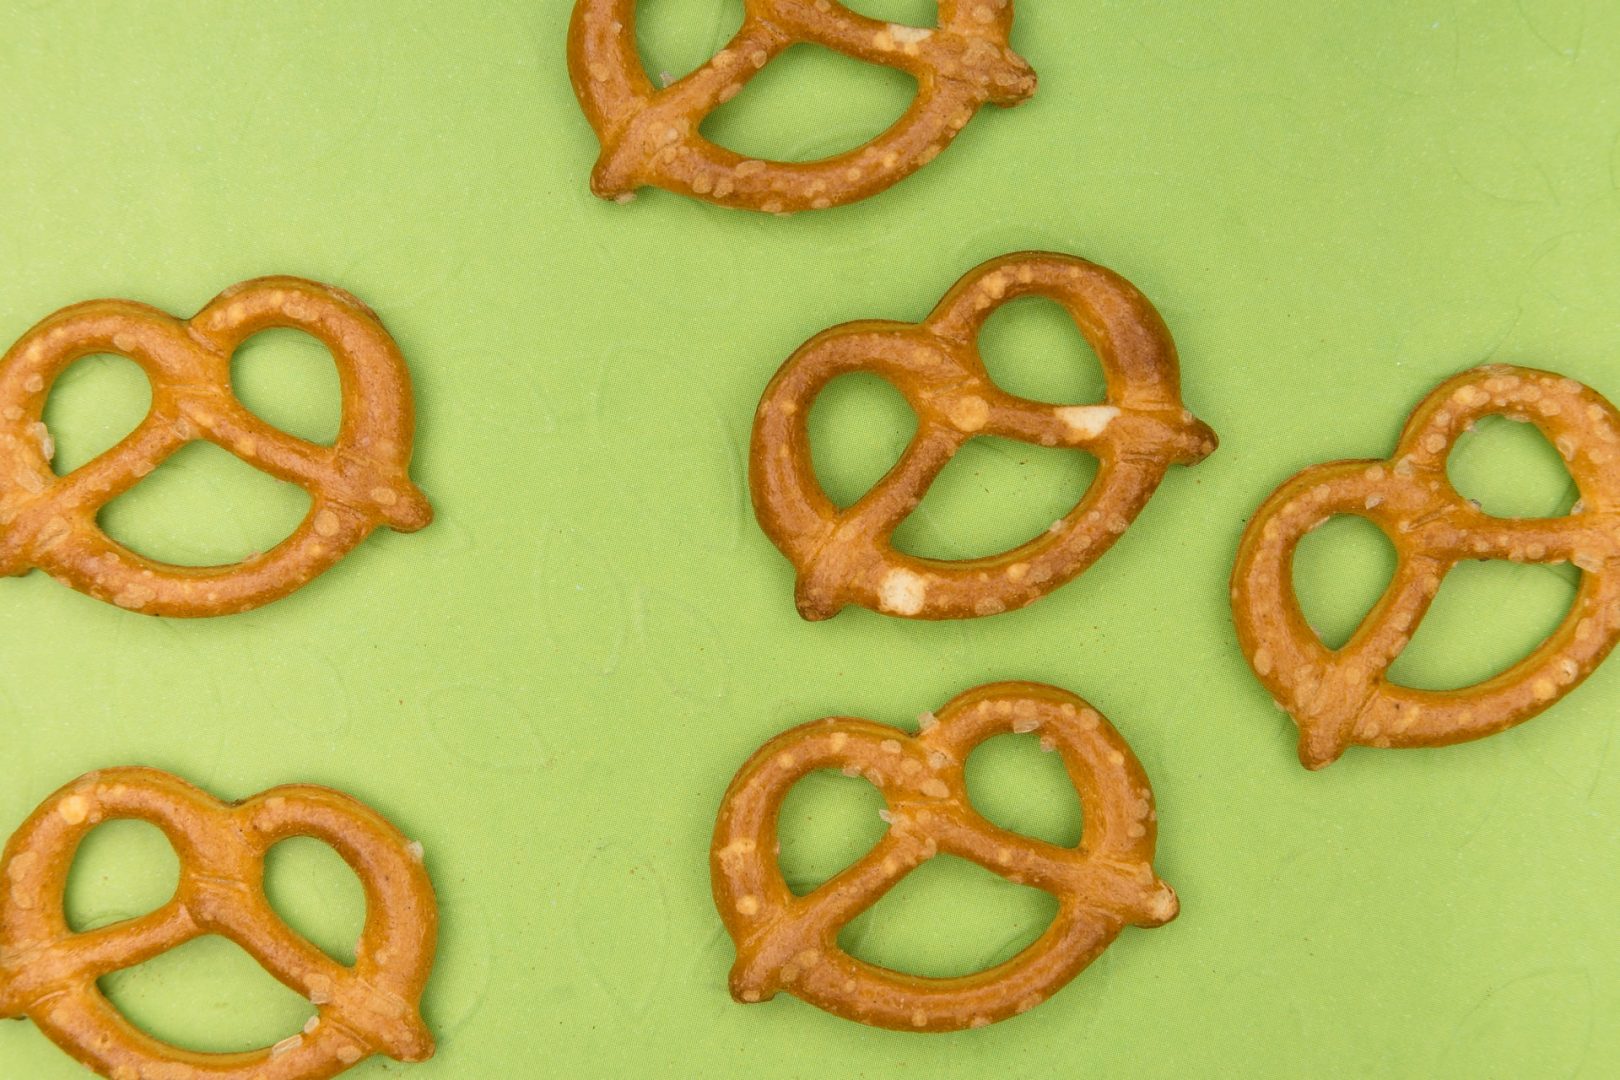 QuaiAlpha_snacking_content_pretzel